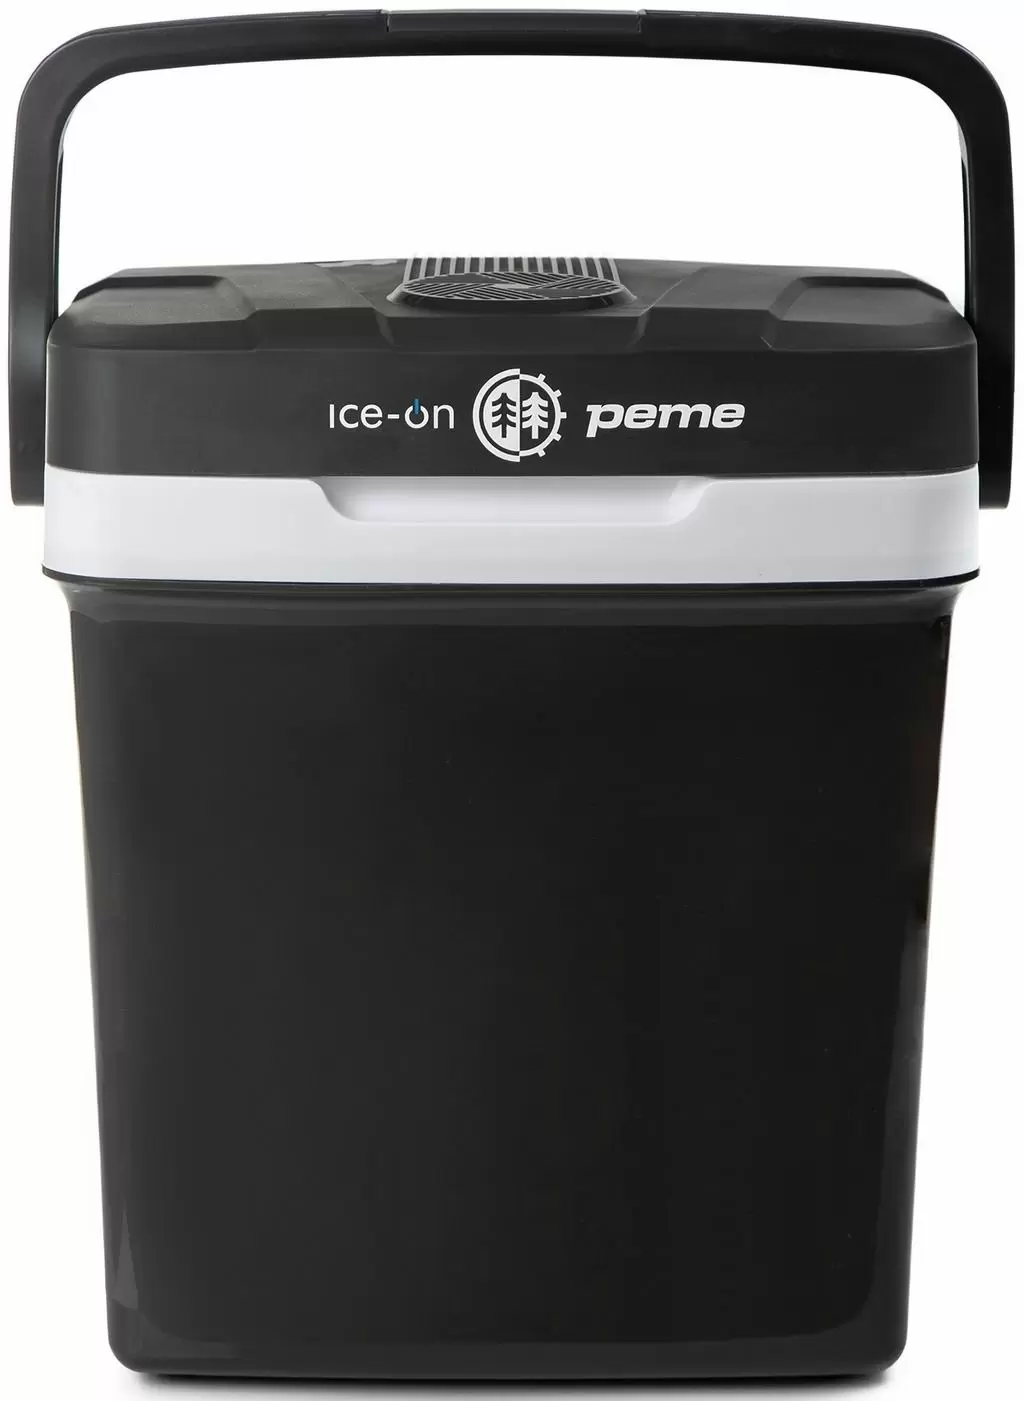 Автомобильный холодильник Peme Ice-on 27L, графит